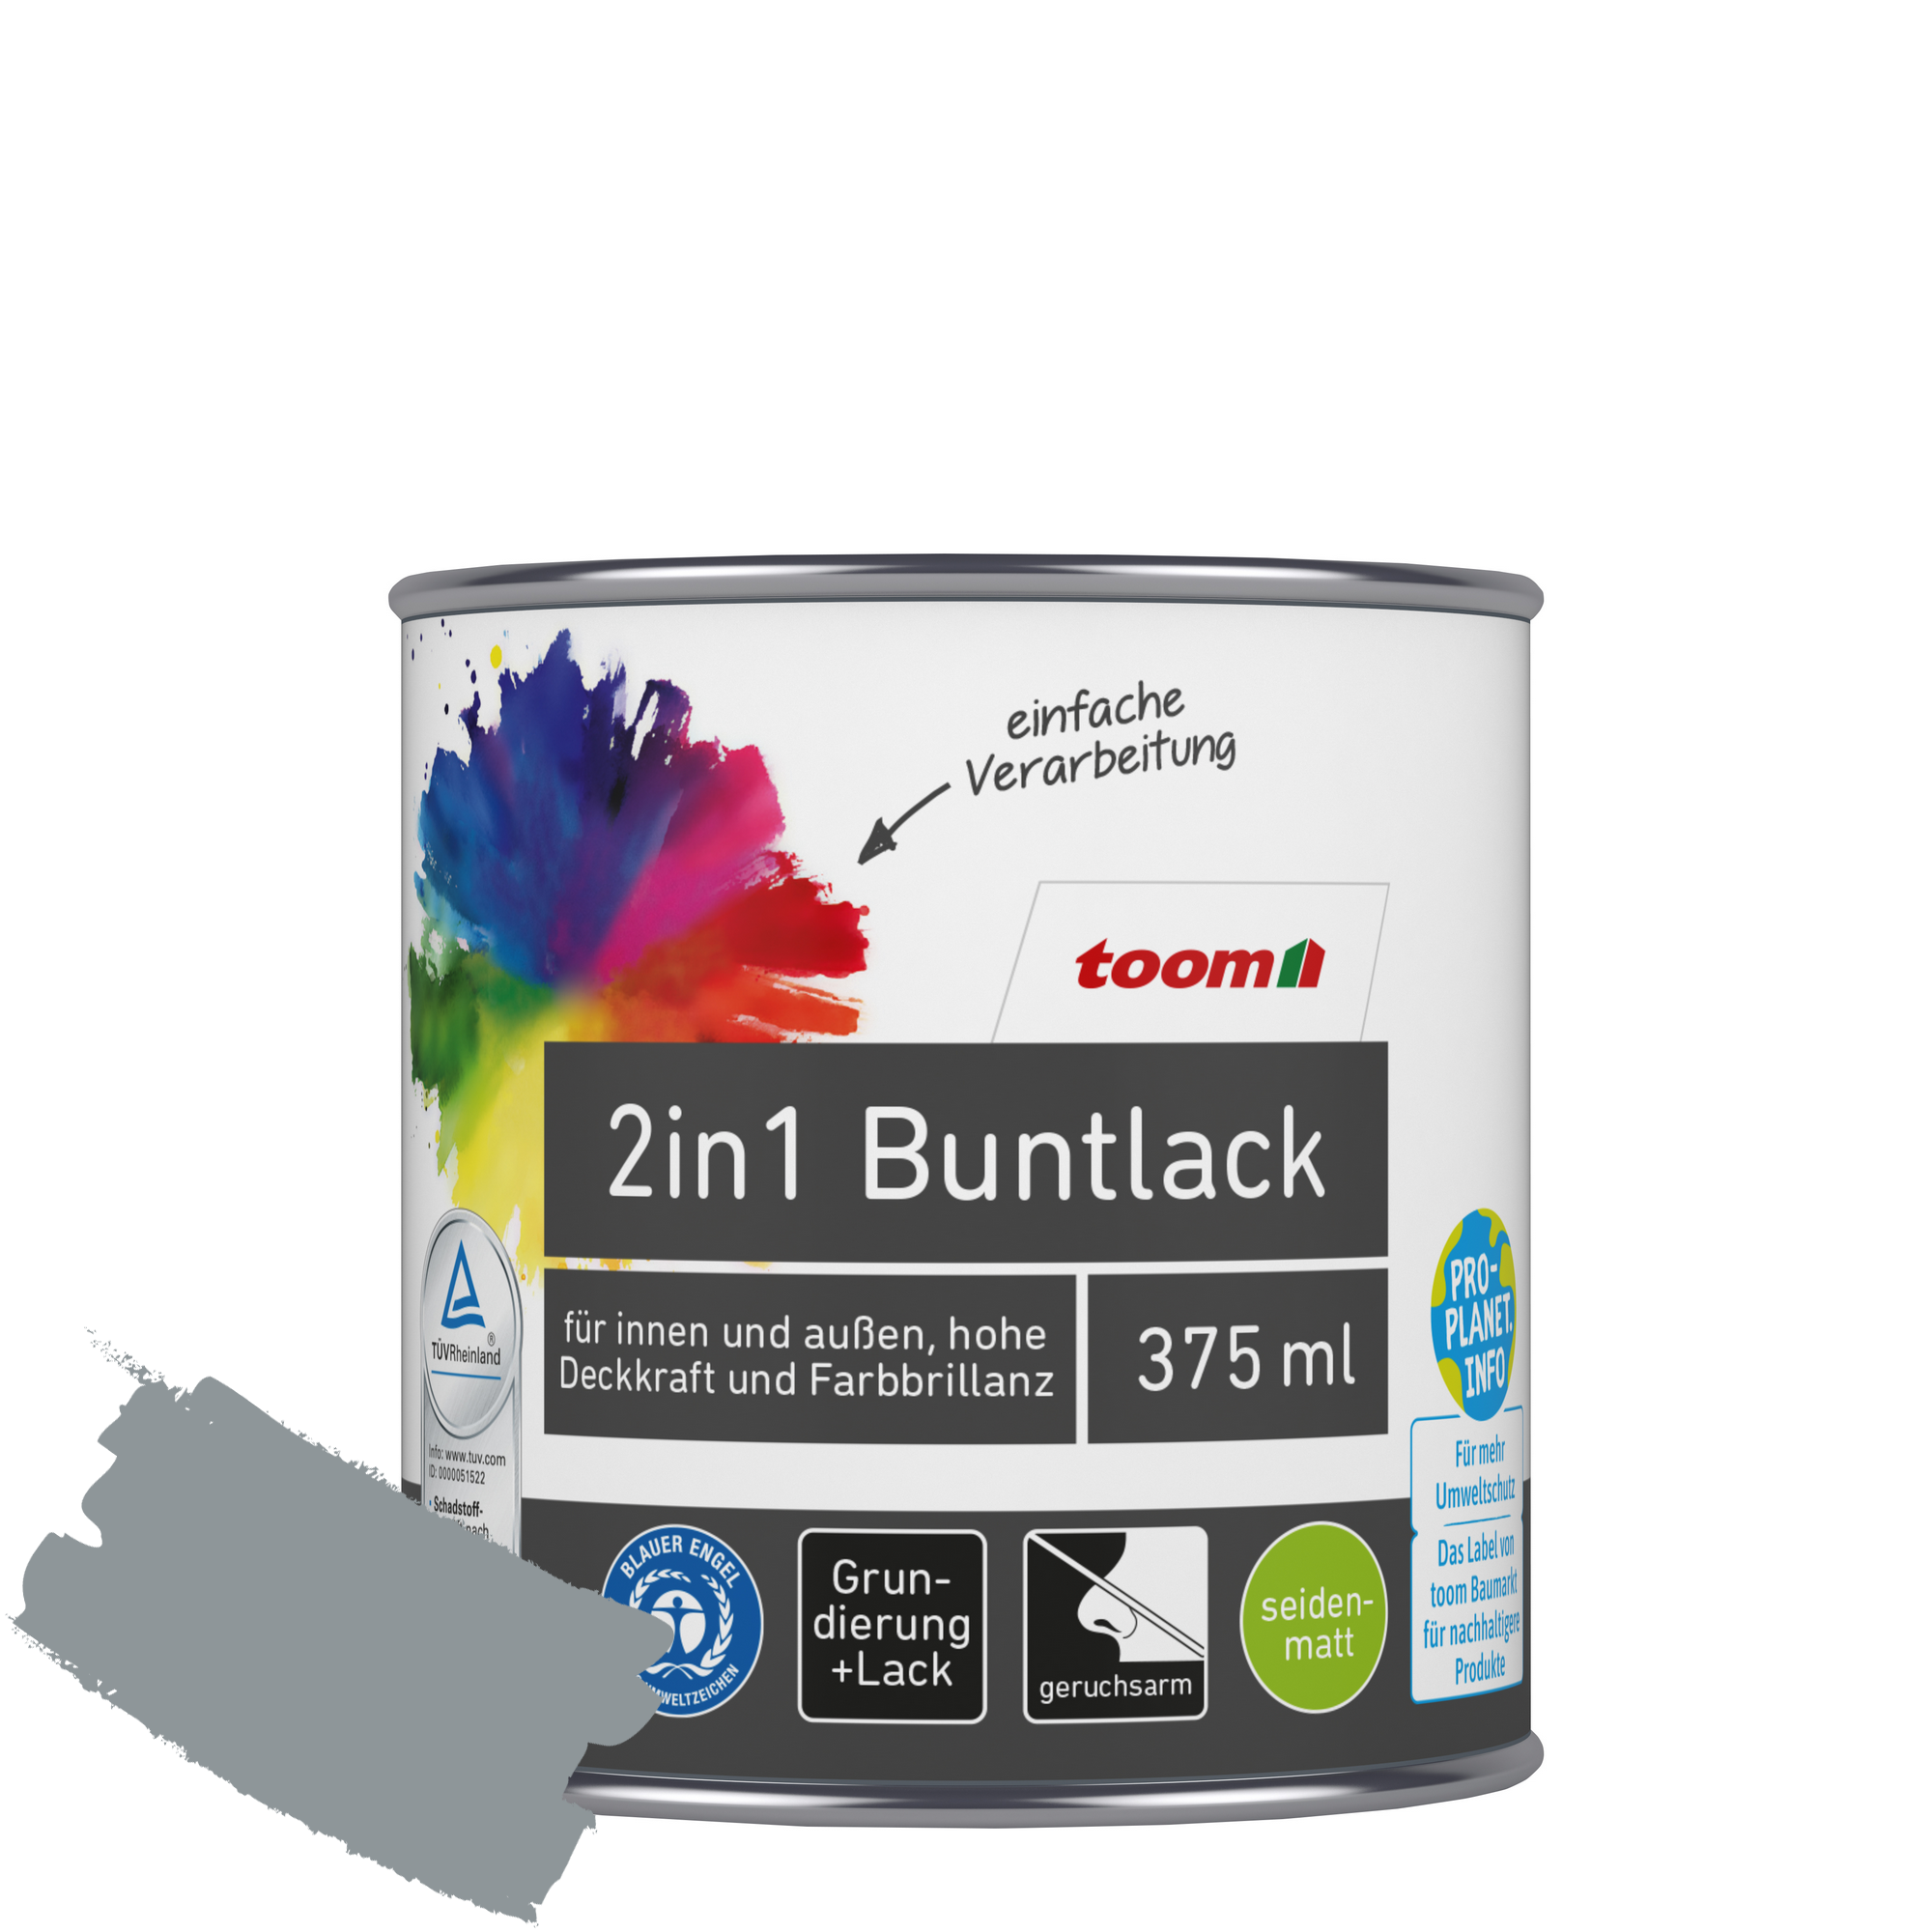 2in1 Buntlack 'Stadtgeflüster' silbergrau seidenmatt 375 ml + product picture